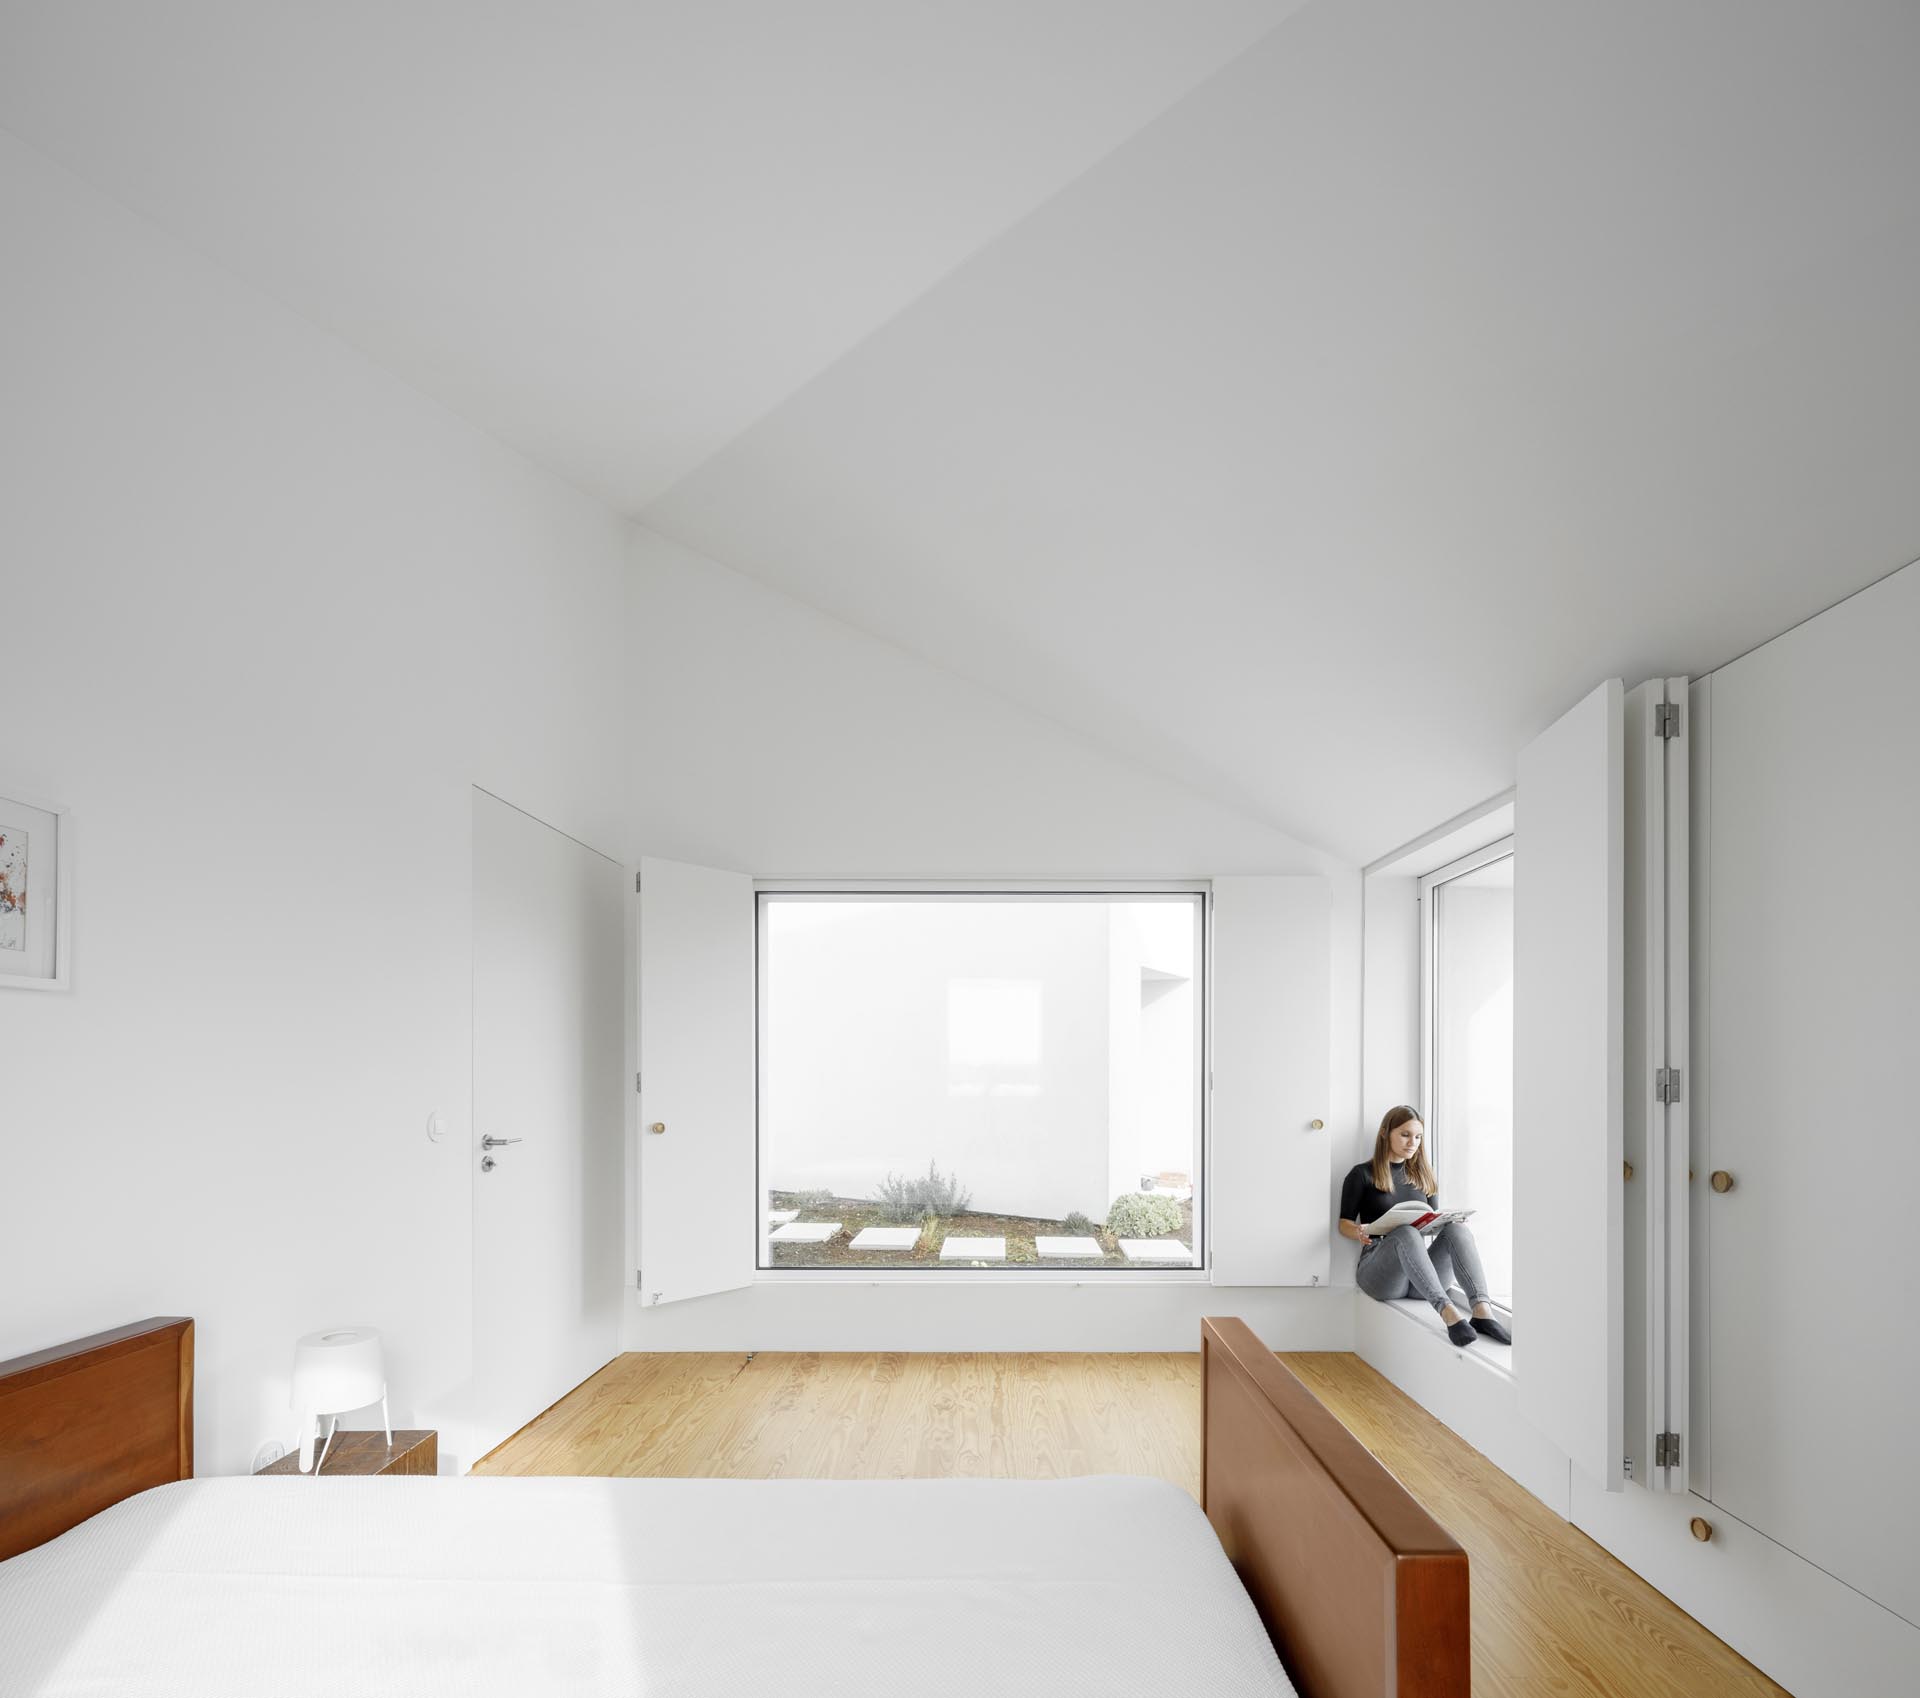 Современная спальня с мебелью в стиле минимализма и складными оконными ставнями.